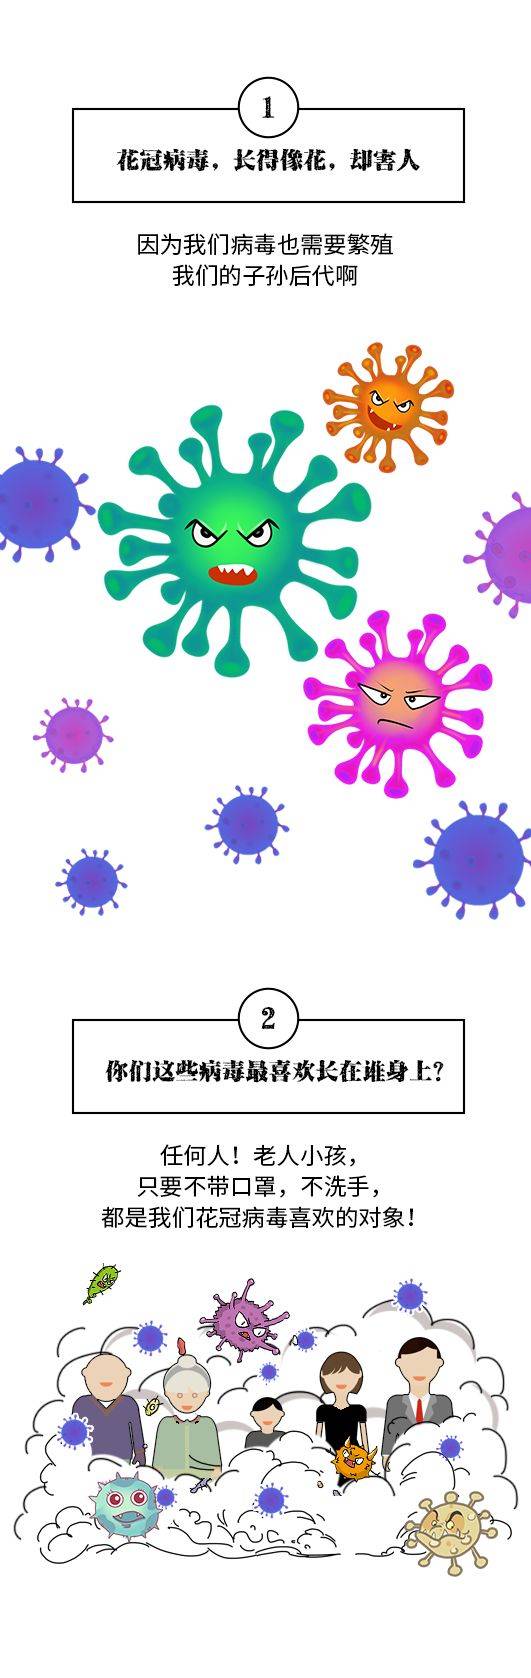 漫画告诉你:新型冠状病毒是这样的!_手机搜狐网